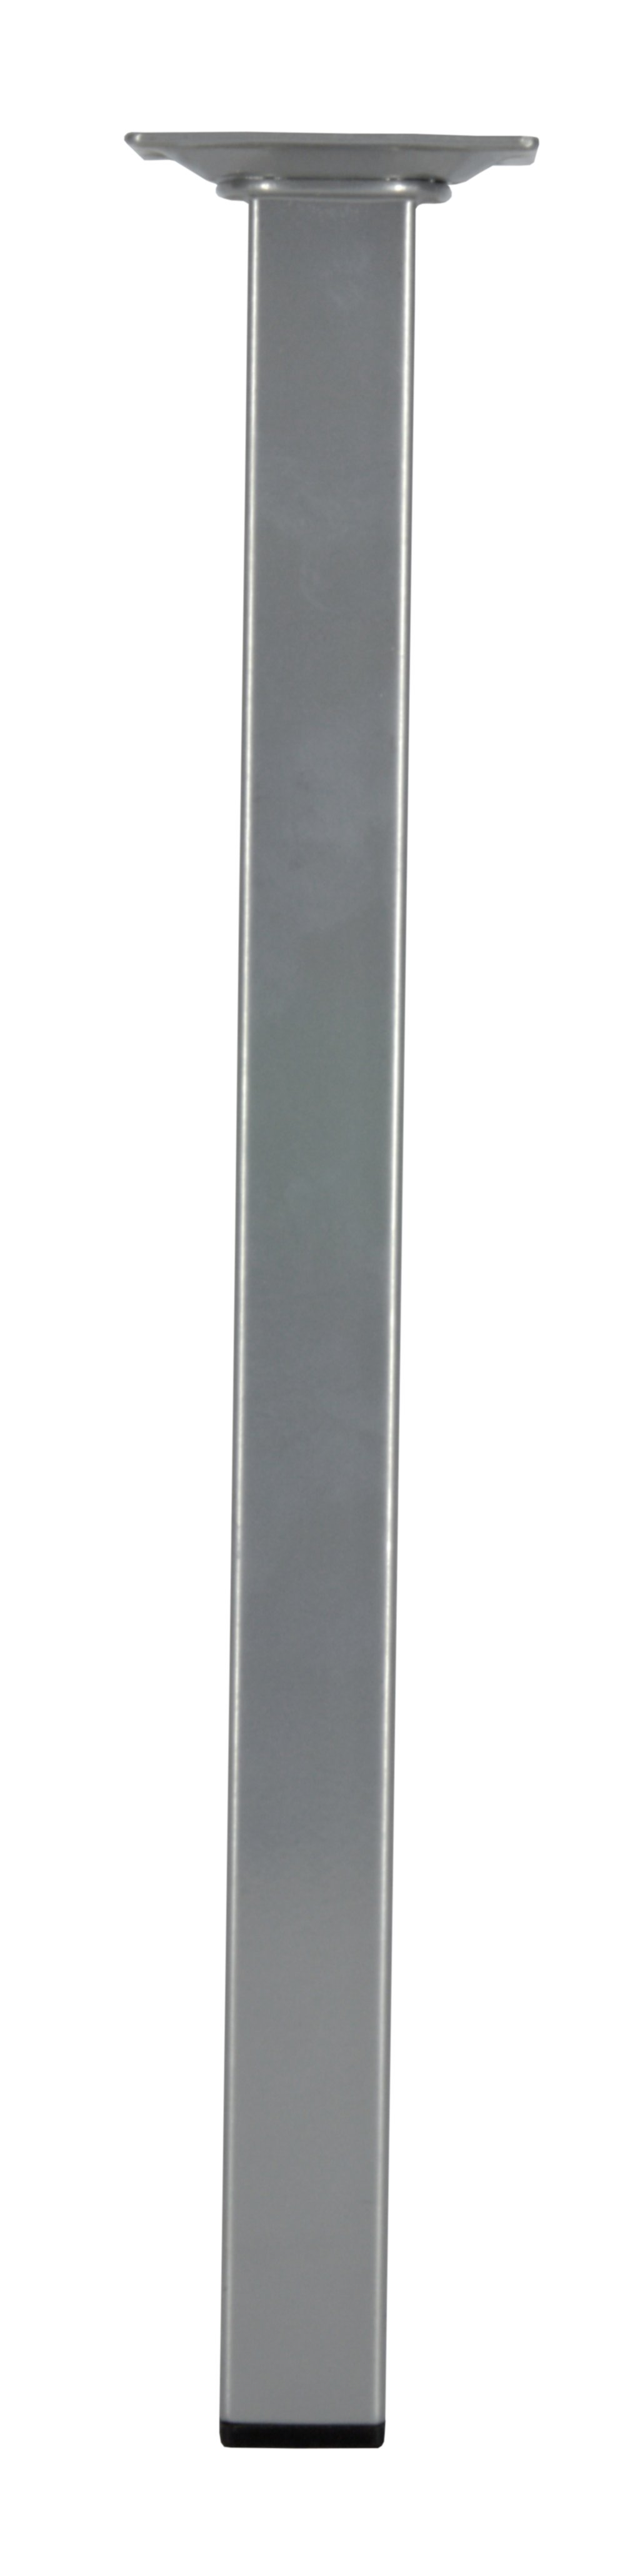 Pied carré acier gris alu, H.350mm 25x25mm - CIME